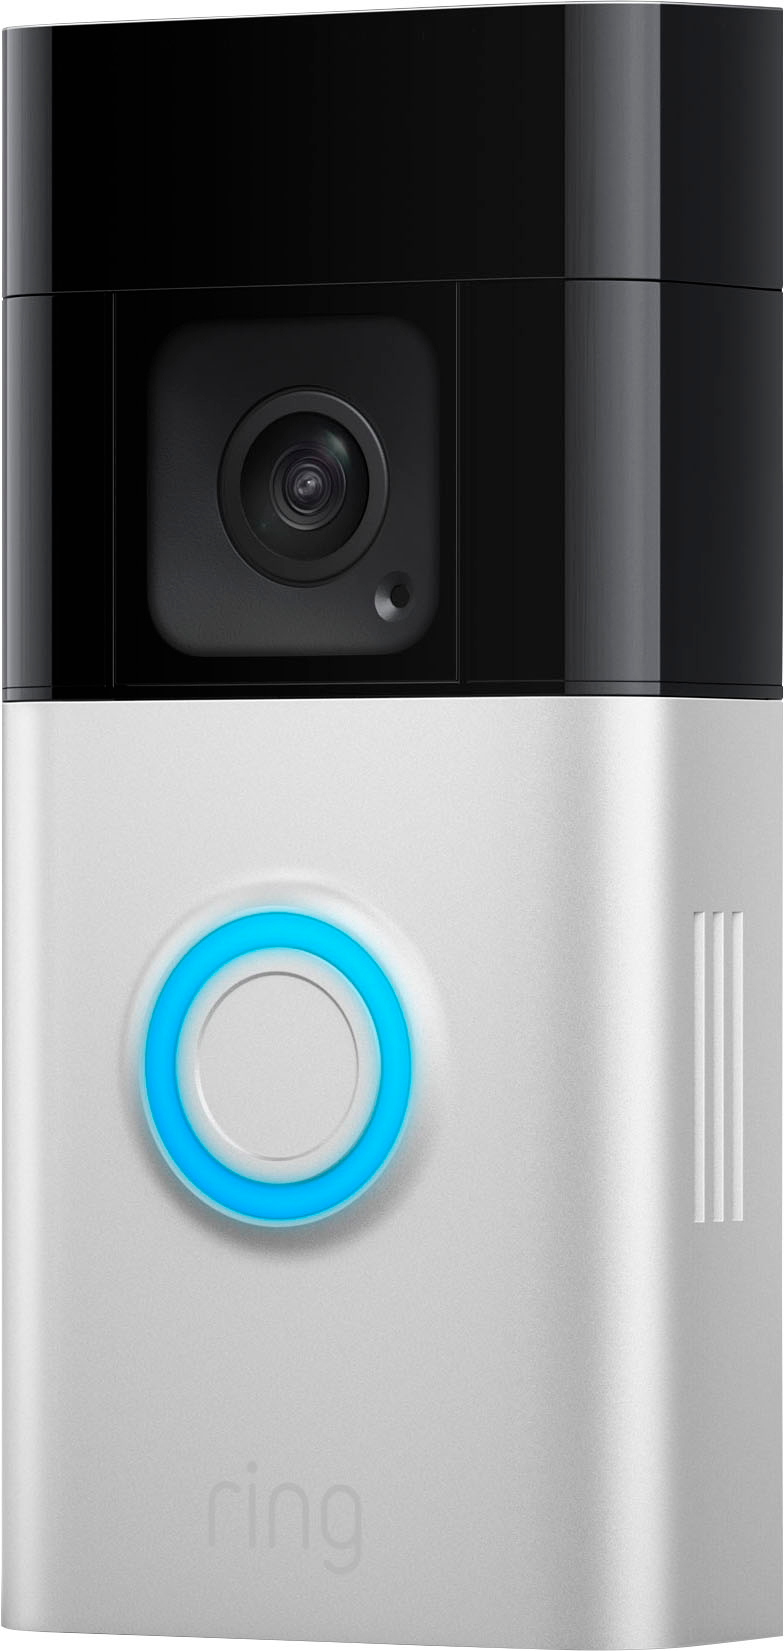 Sonnette vidéo Plus sans fil (Battery Video Doorbell Plus